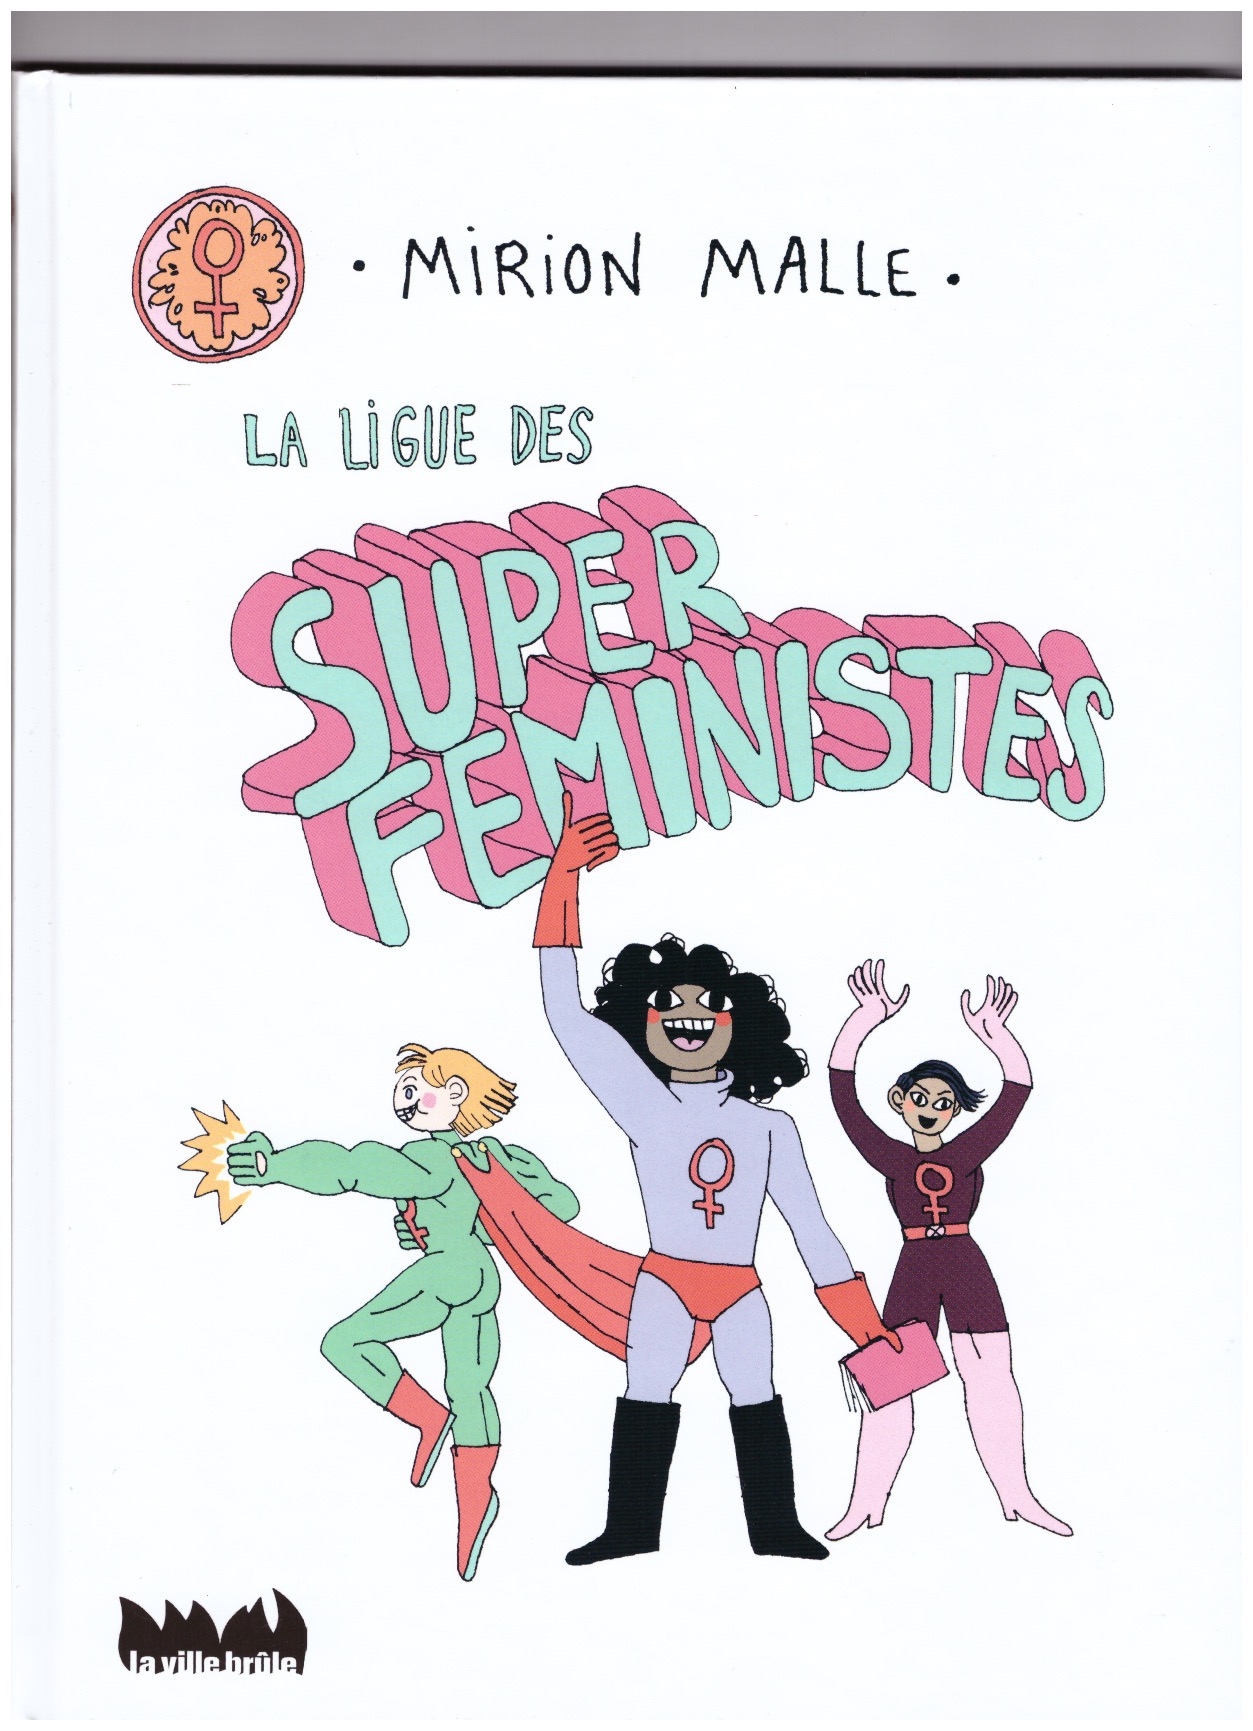 MALLE, Mirion - La ligue des super féministes